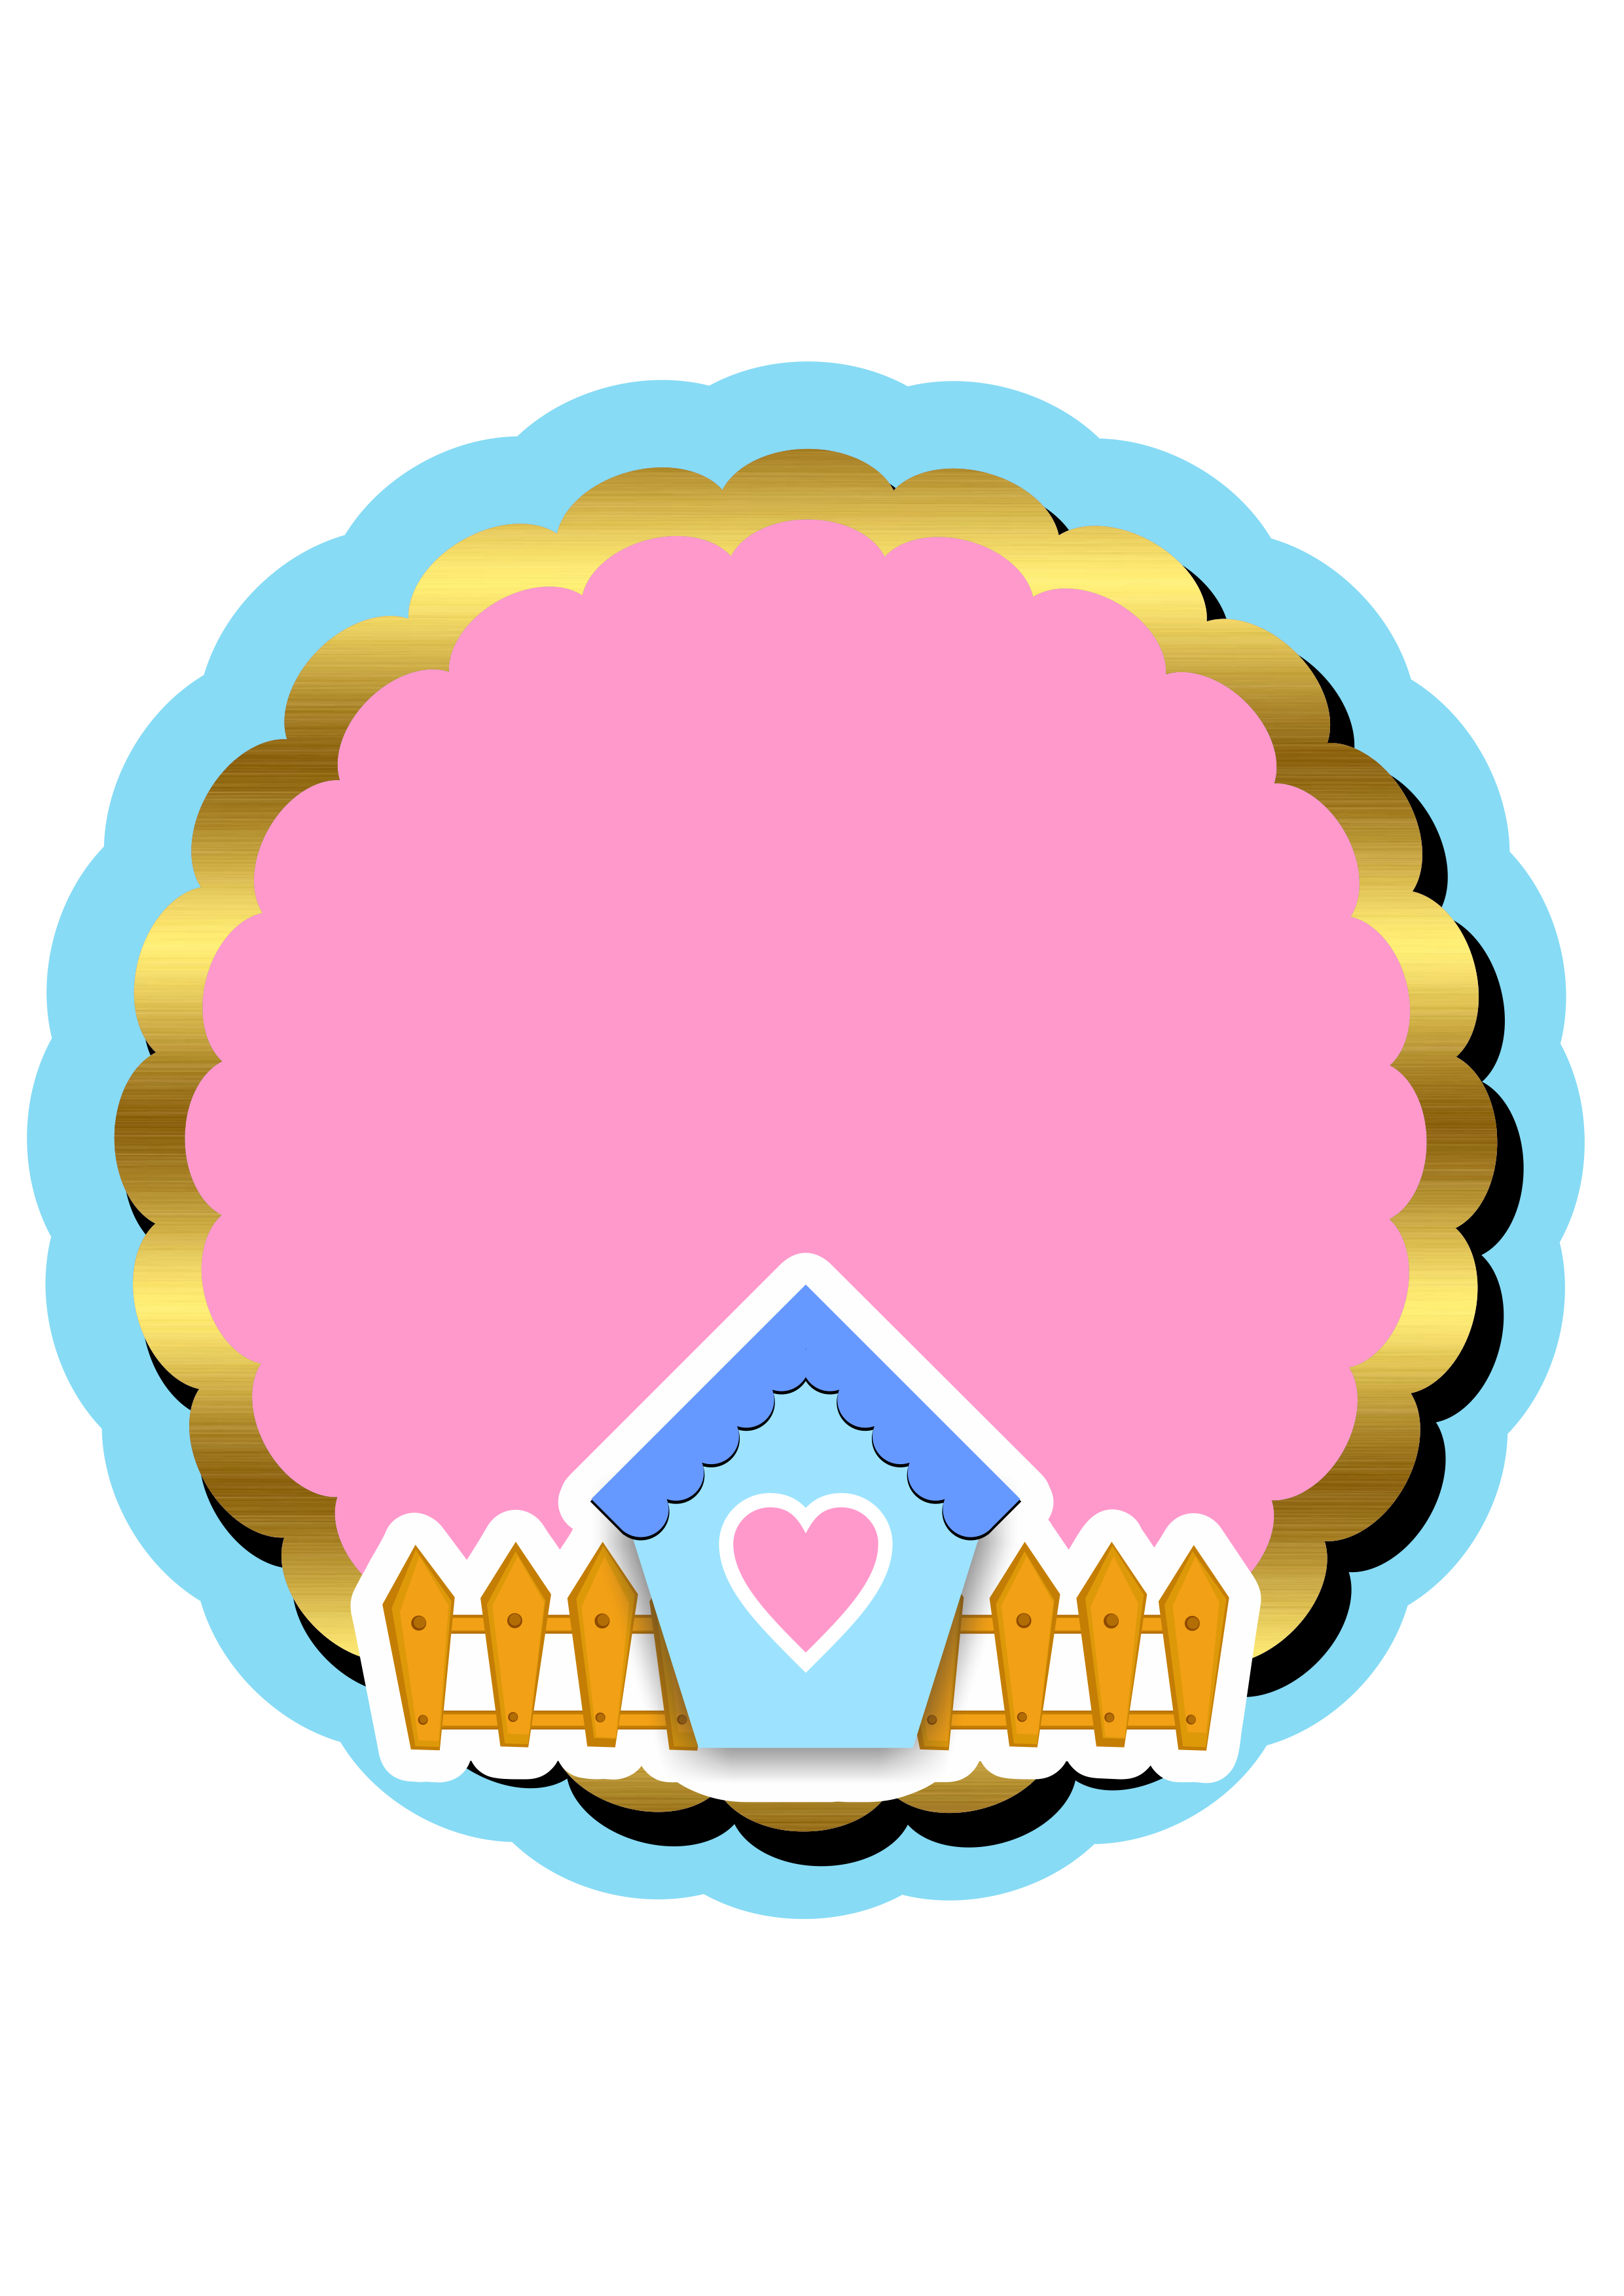 Circulo azul com rosa e dourado casinha bonitinha adesivo painel para editar png